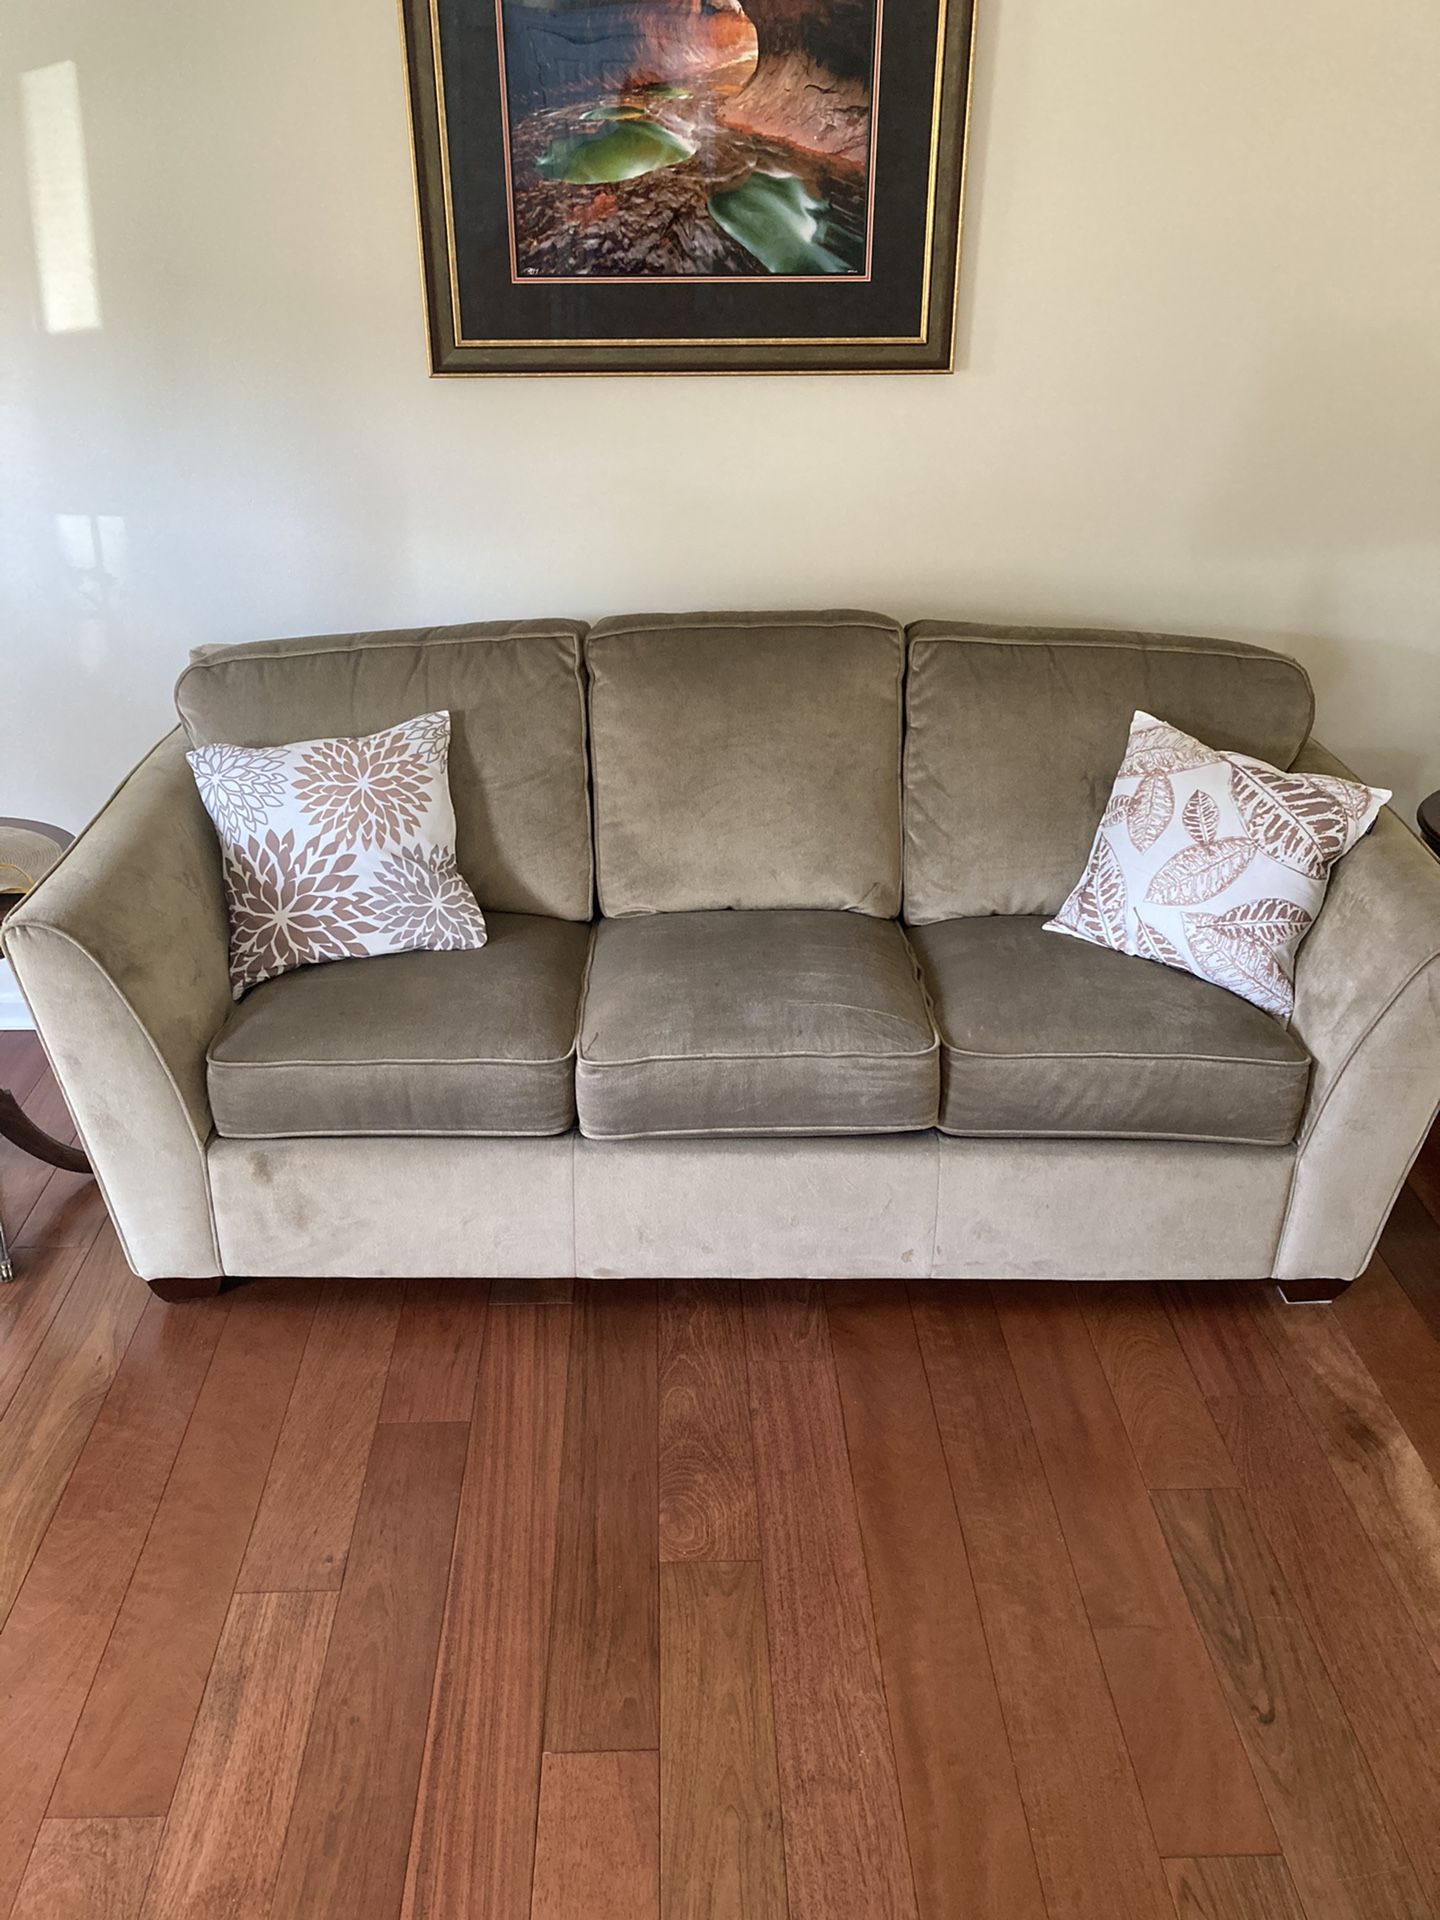 La-z-boy sofa, chair and ottoman